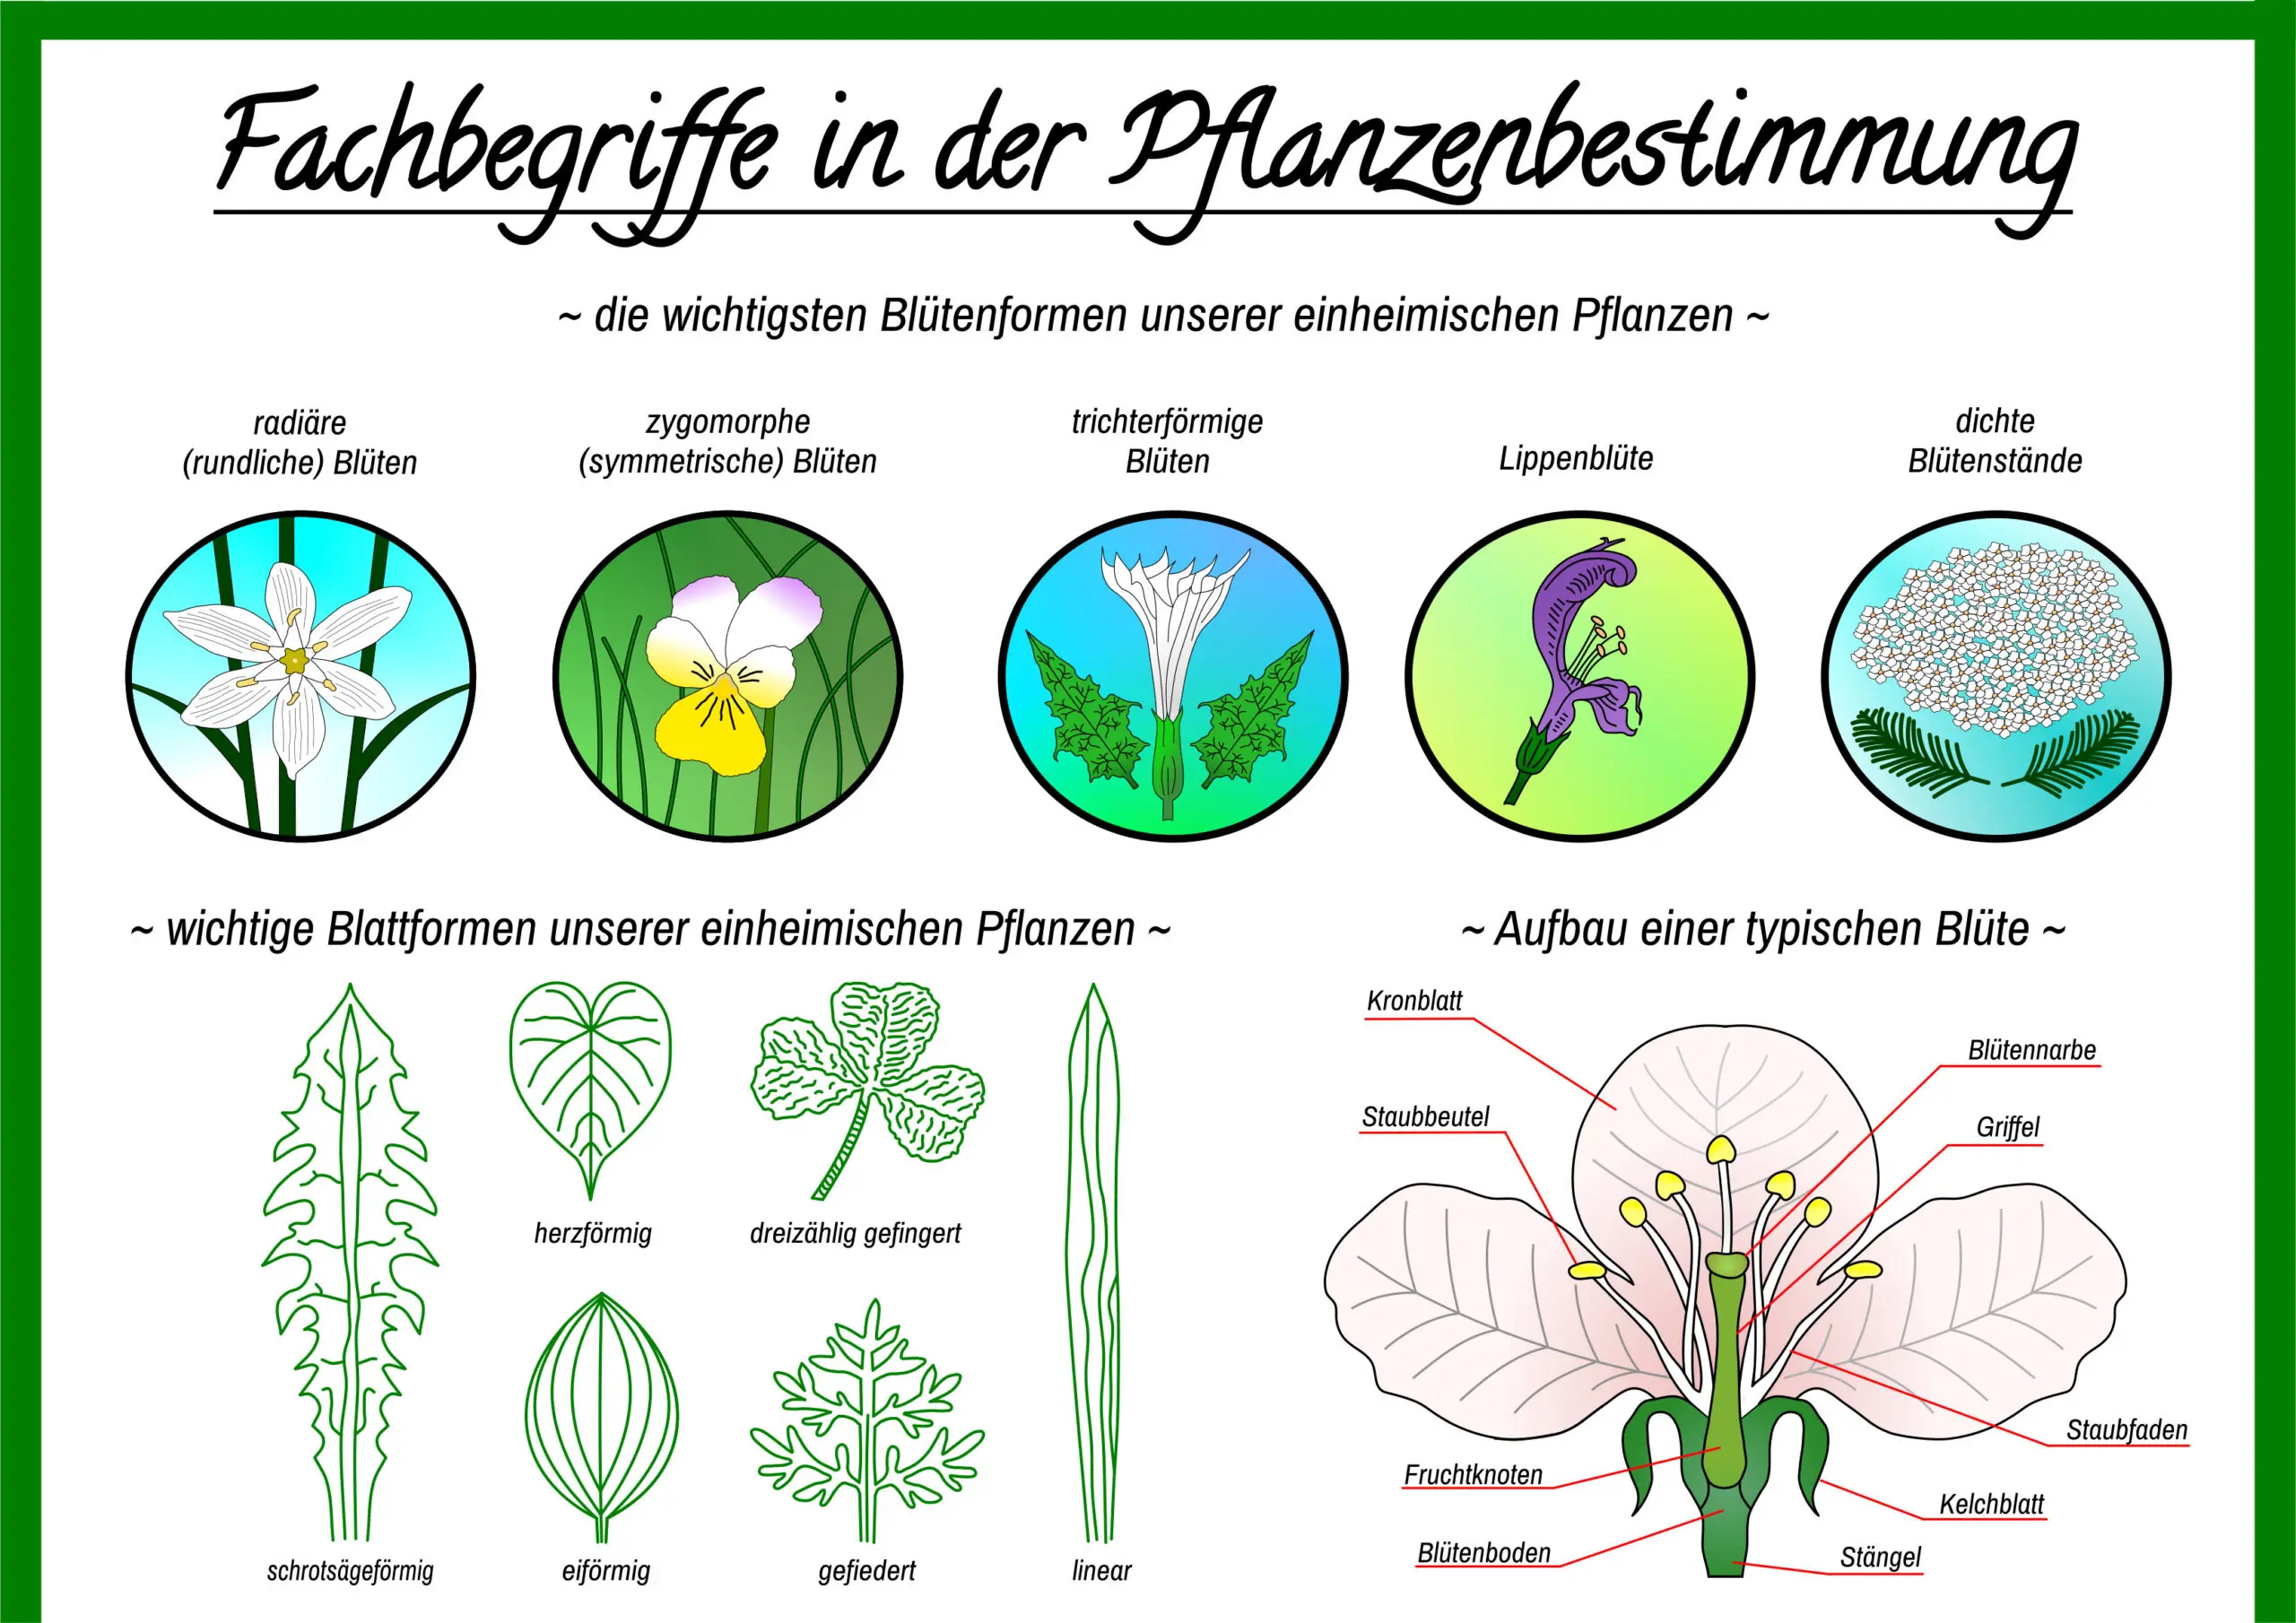 Die wichtigsten Fachbegriffe der Pflanzenbestimmung -  ein Ausschnitt aus dem PDF / Bild